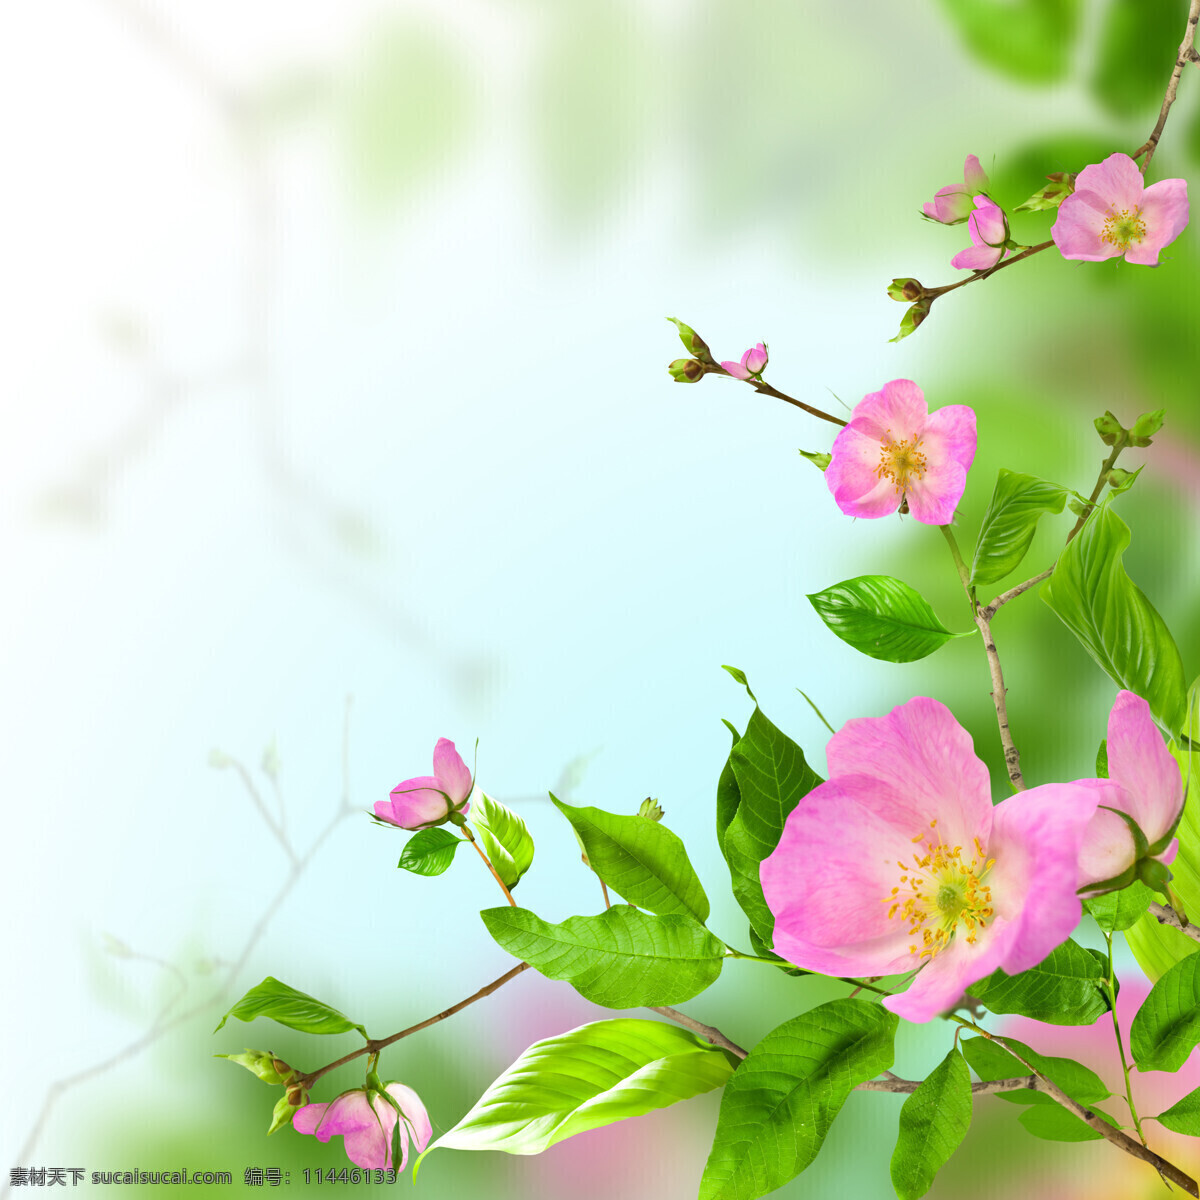 绿色 粉色 花朵 绿叶 叶子 鲜花 粉色花朵 植物 花草树木 生物世界